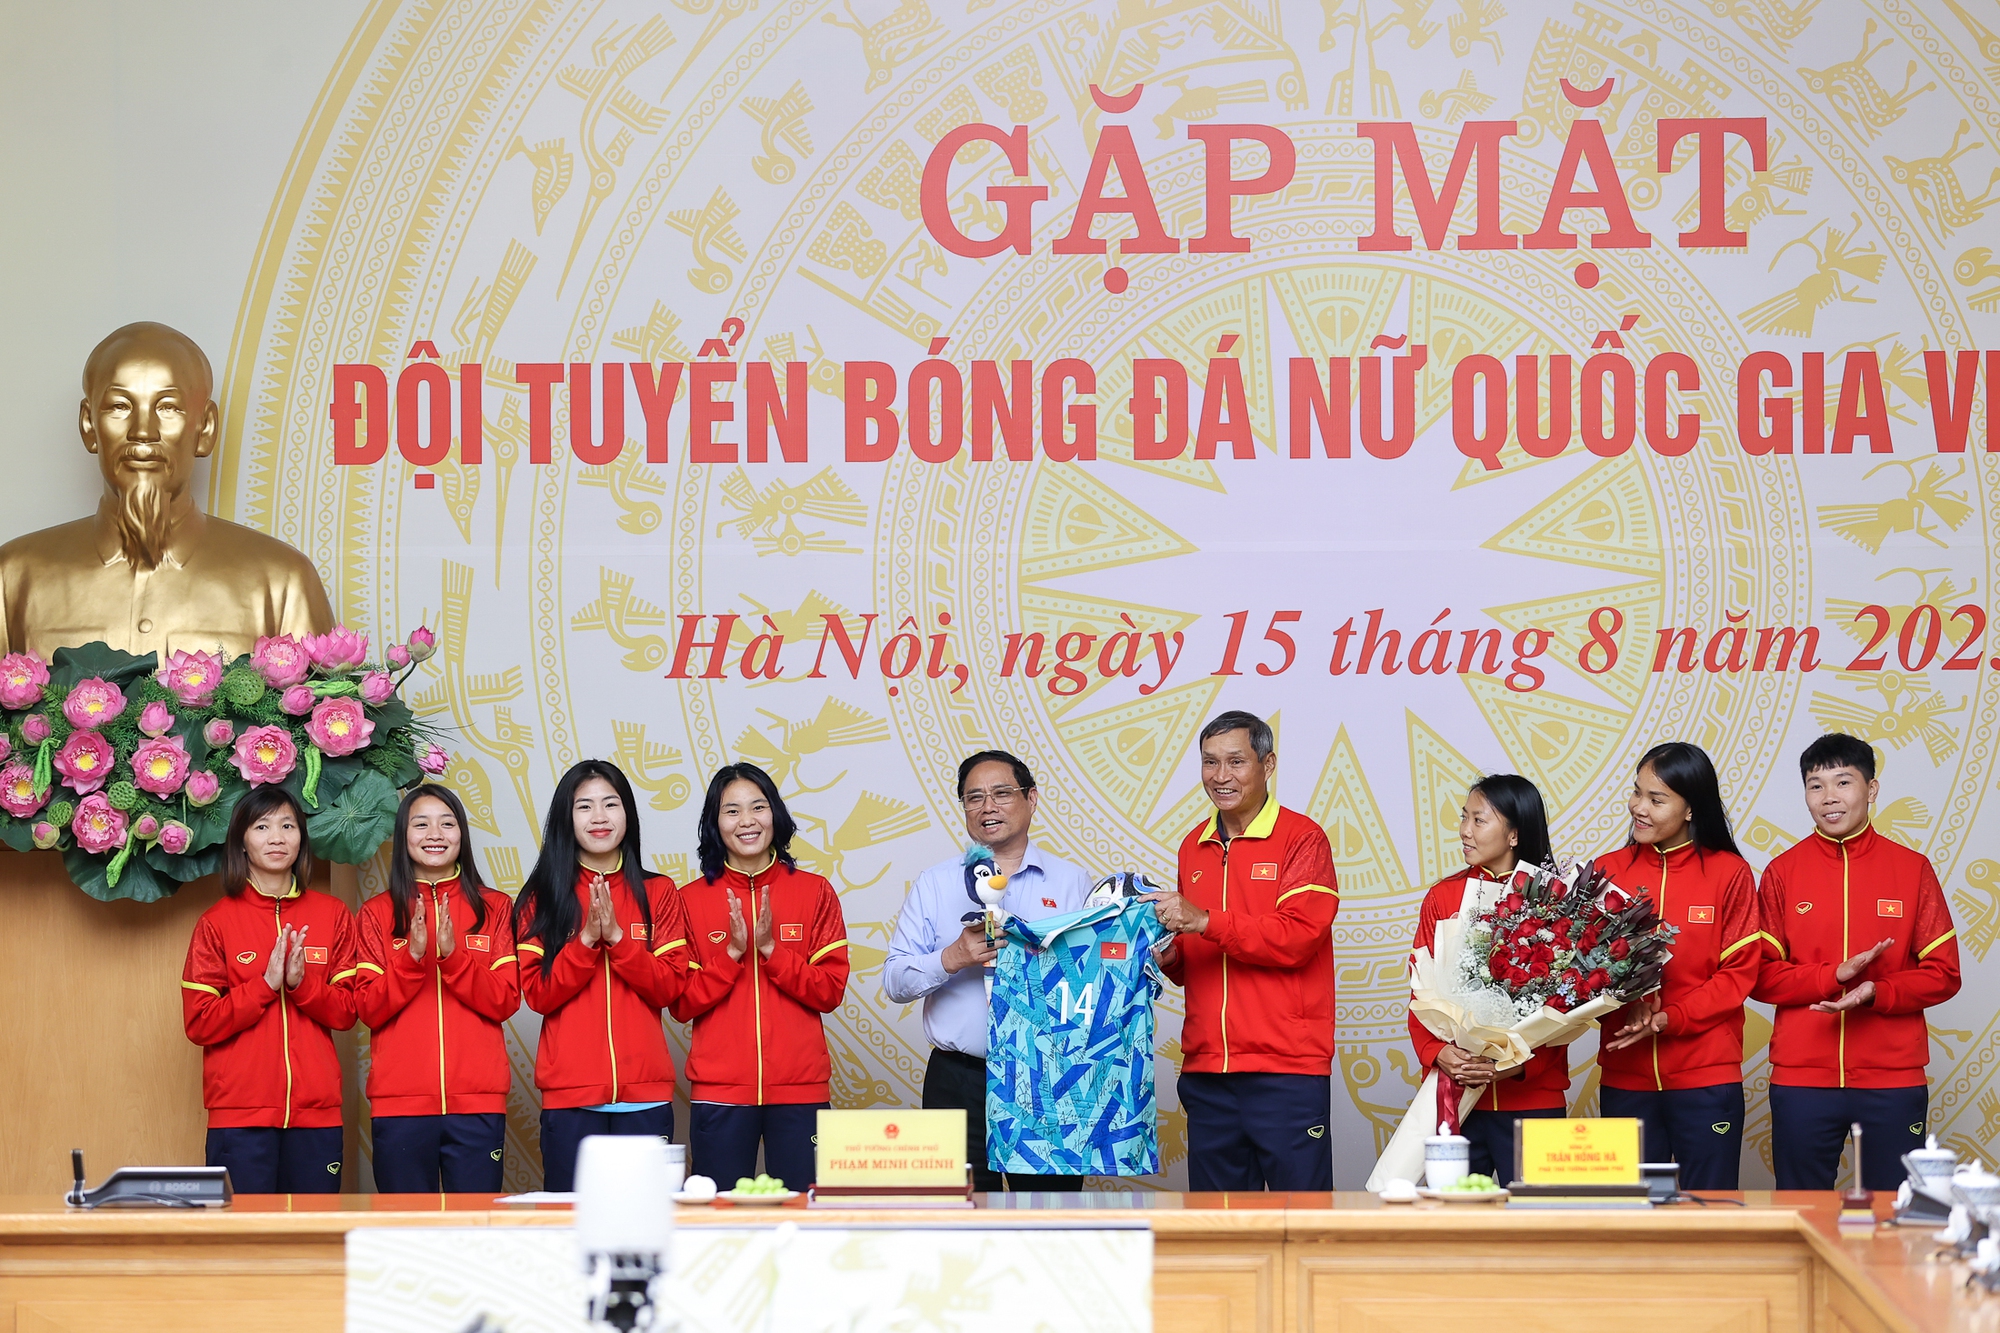 Đội tuyển bóng đá nữ quốc gia Việt Nam tặng Thủ tướng các món quà lưu niệm - Ảnh: VGP/Nhật Bắc